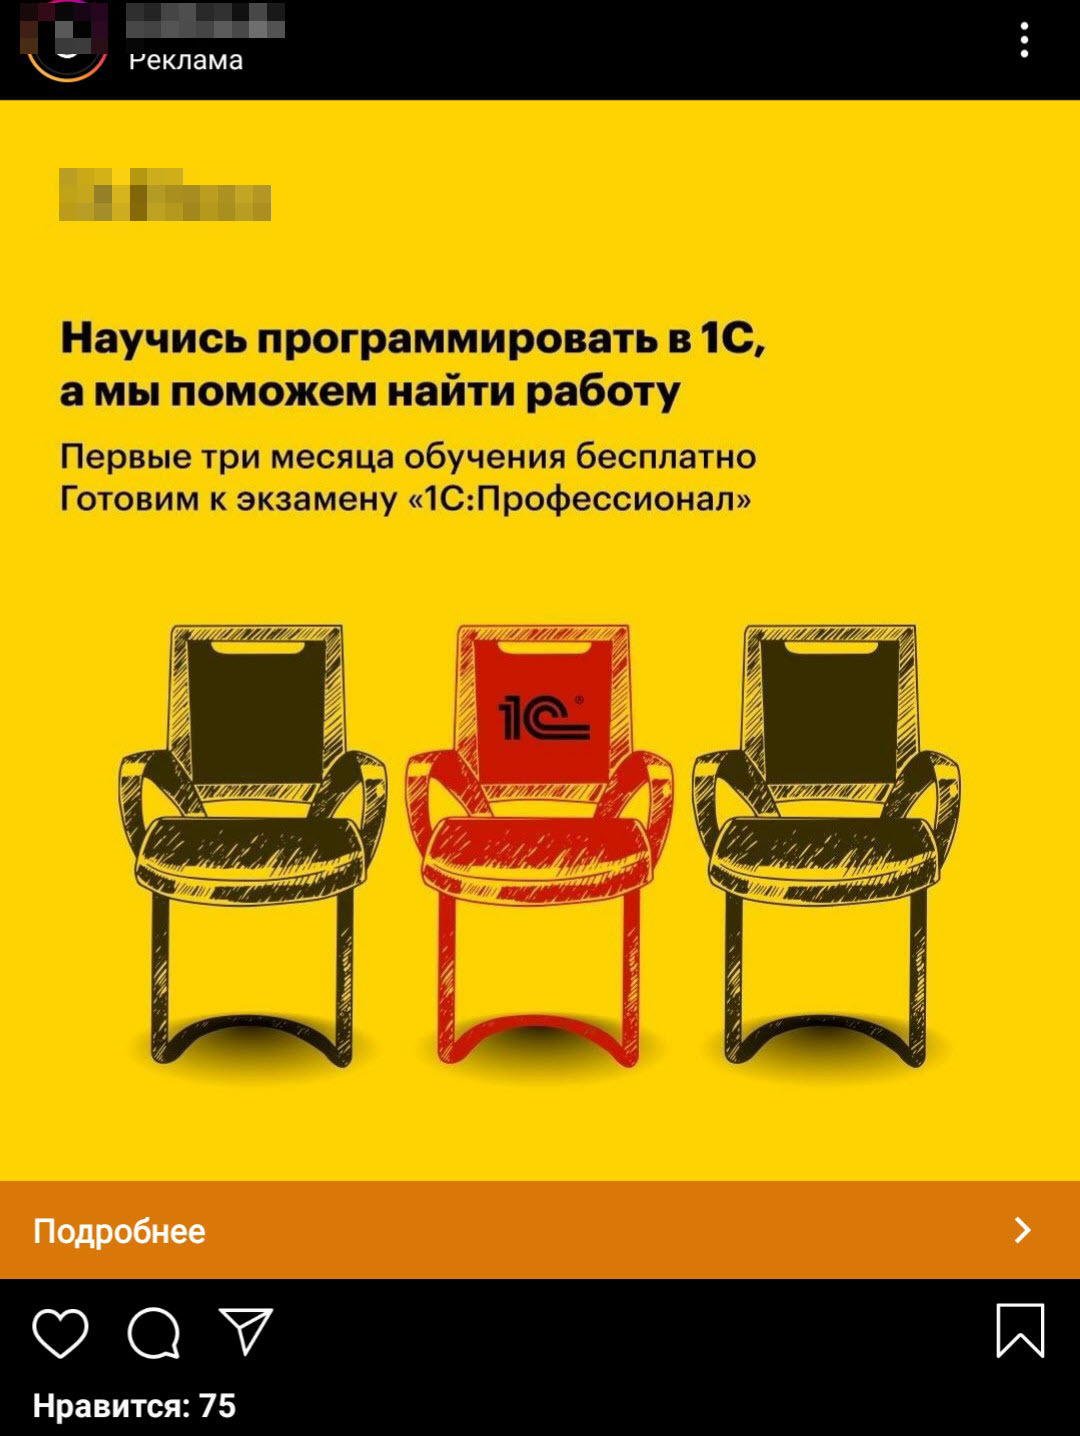 Тюремная загадка про два стула ответ. Есть 3 стула. Реклама стульев. Реклама табурета. Реклама стульев пример.